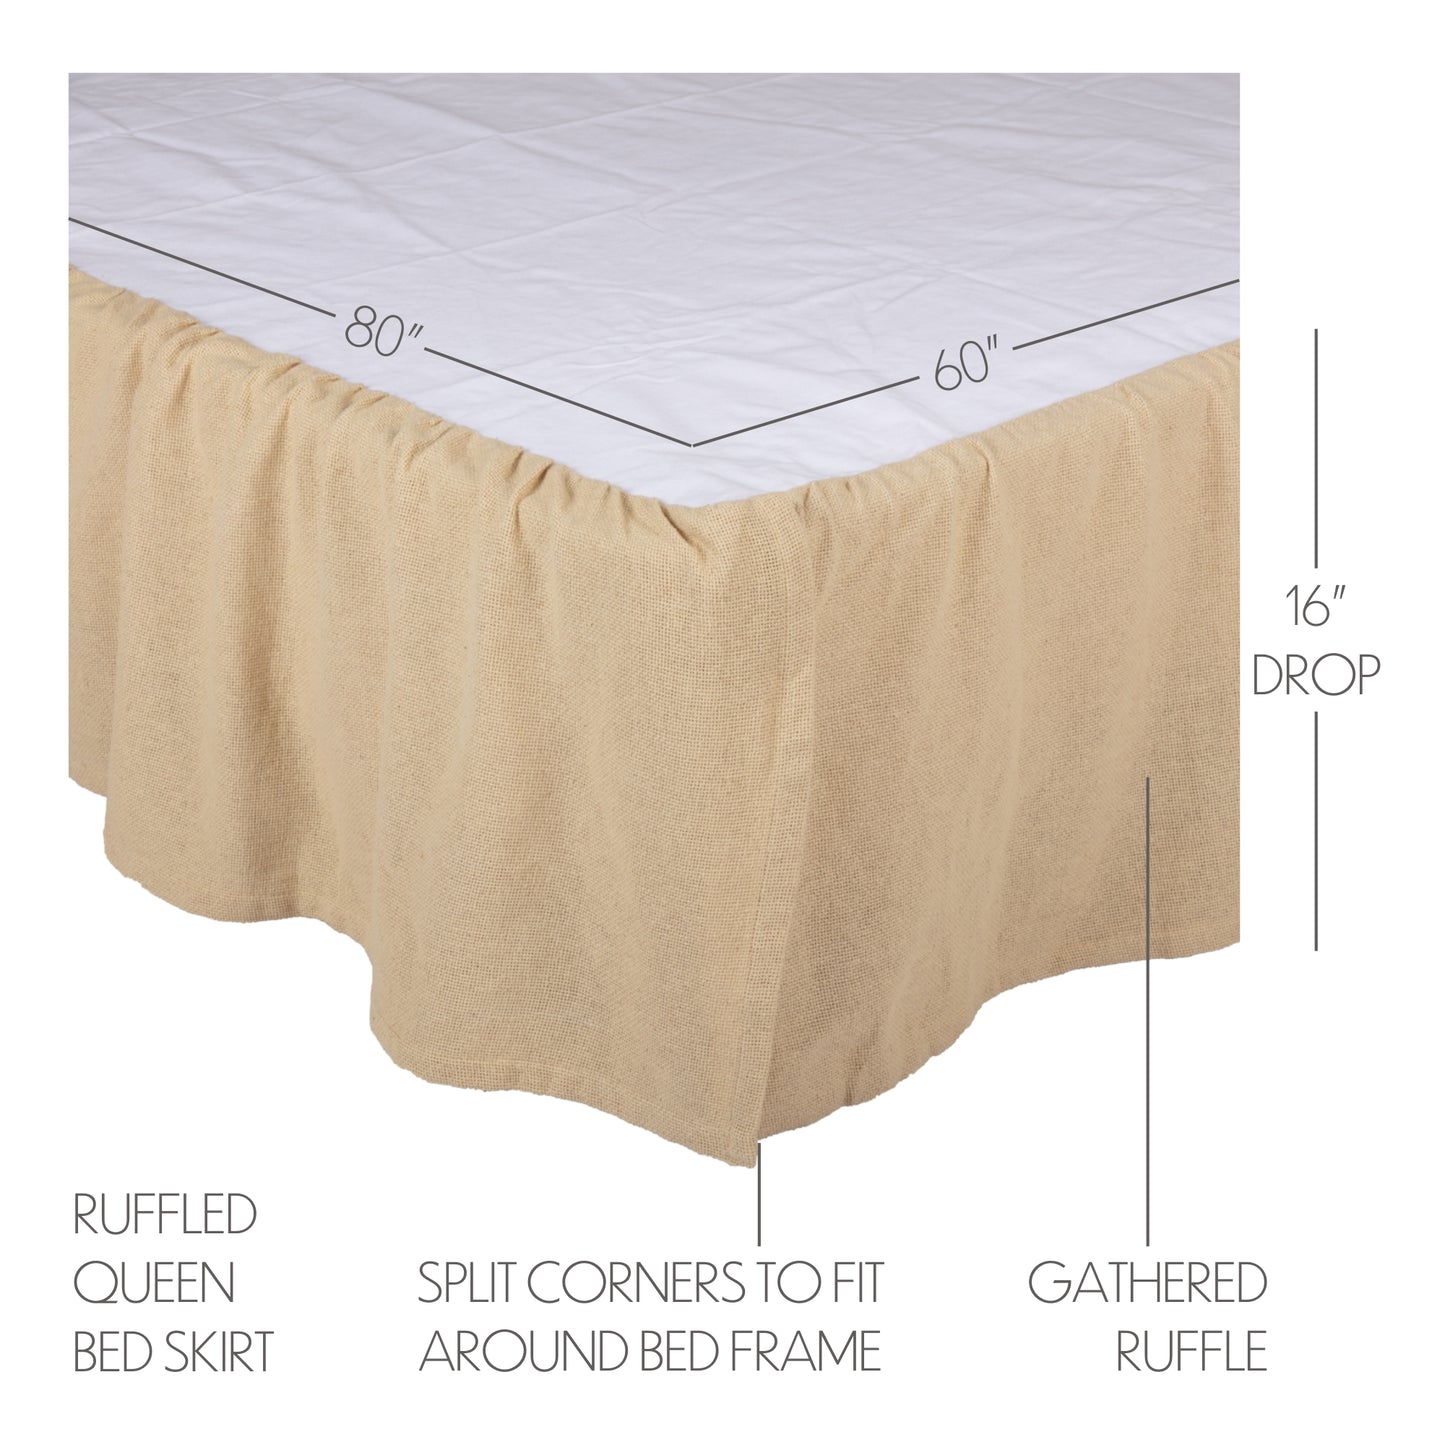 51800-Burlap-Vintage-Ruffled-Queen-Bed-Skirt-60x80x16-image-1